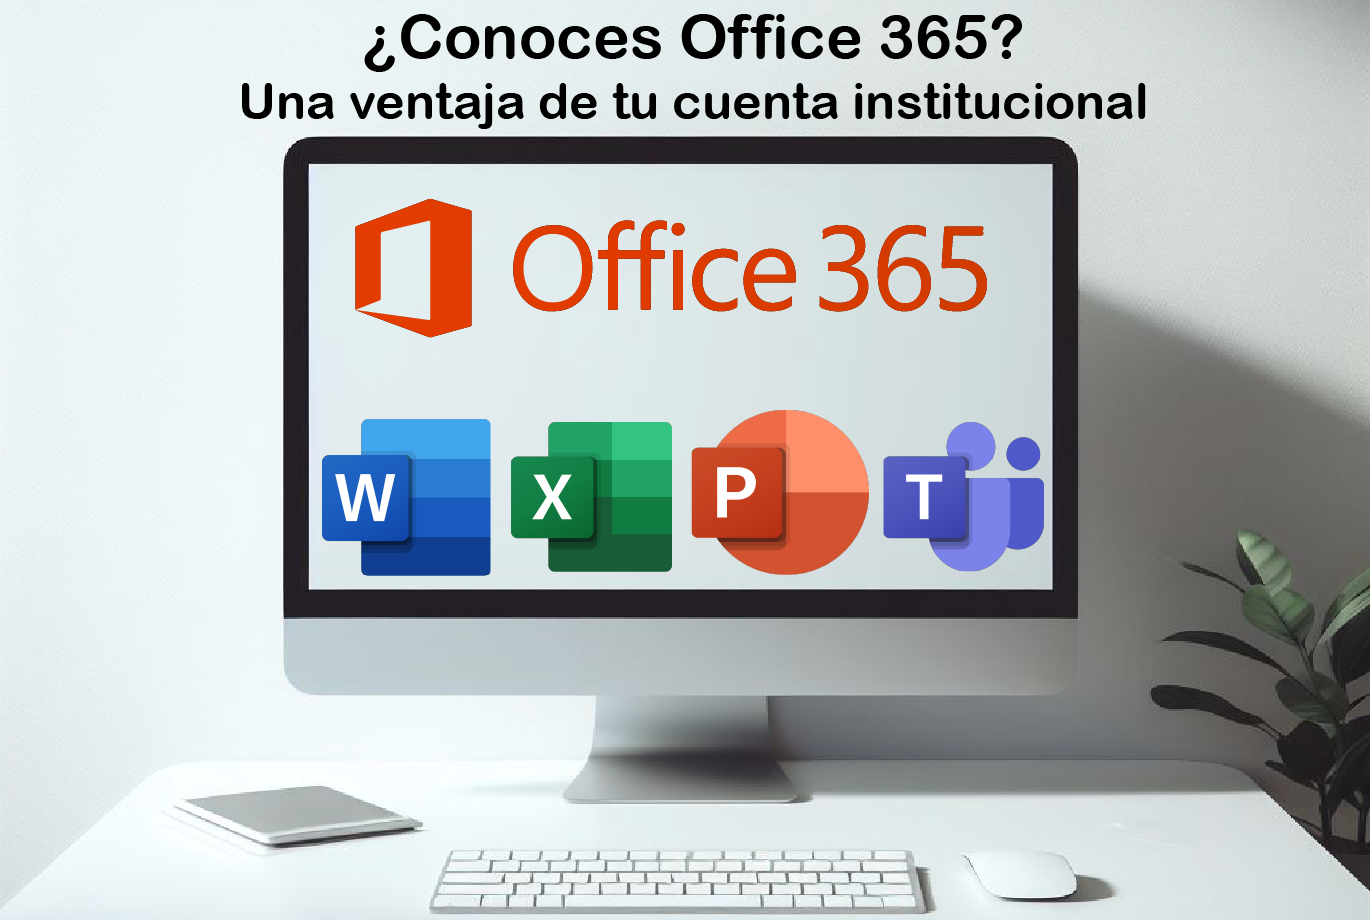 Conoces office 365? Integrate a la Plataforma institucional Office 365